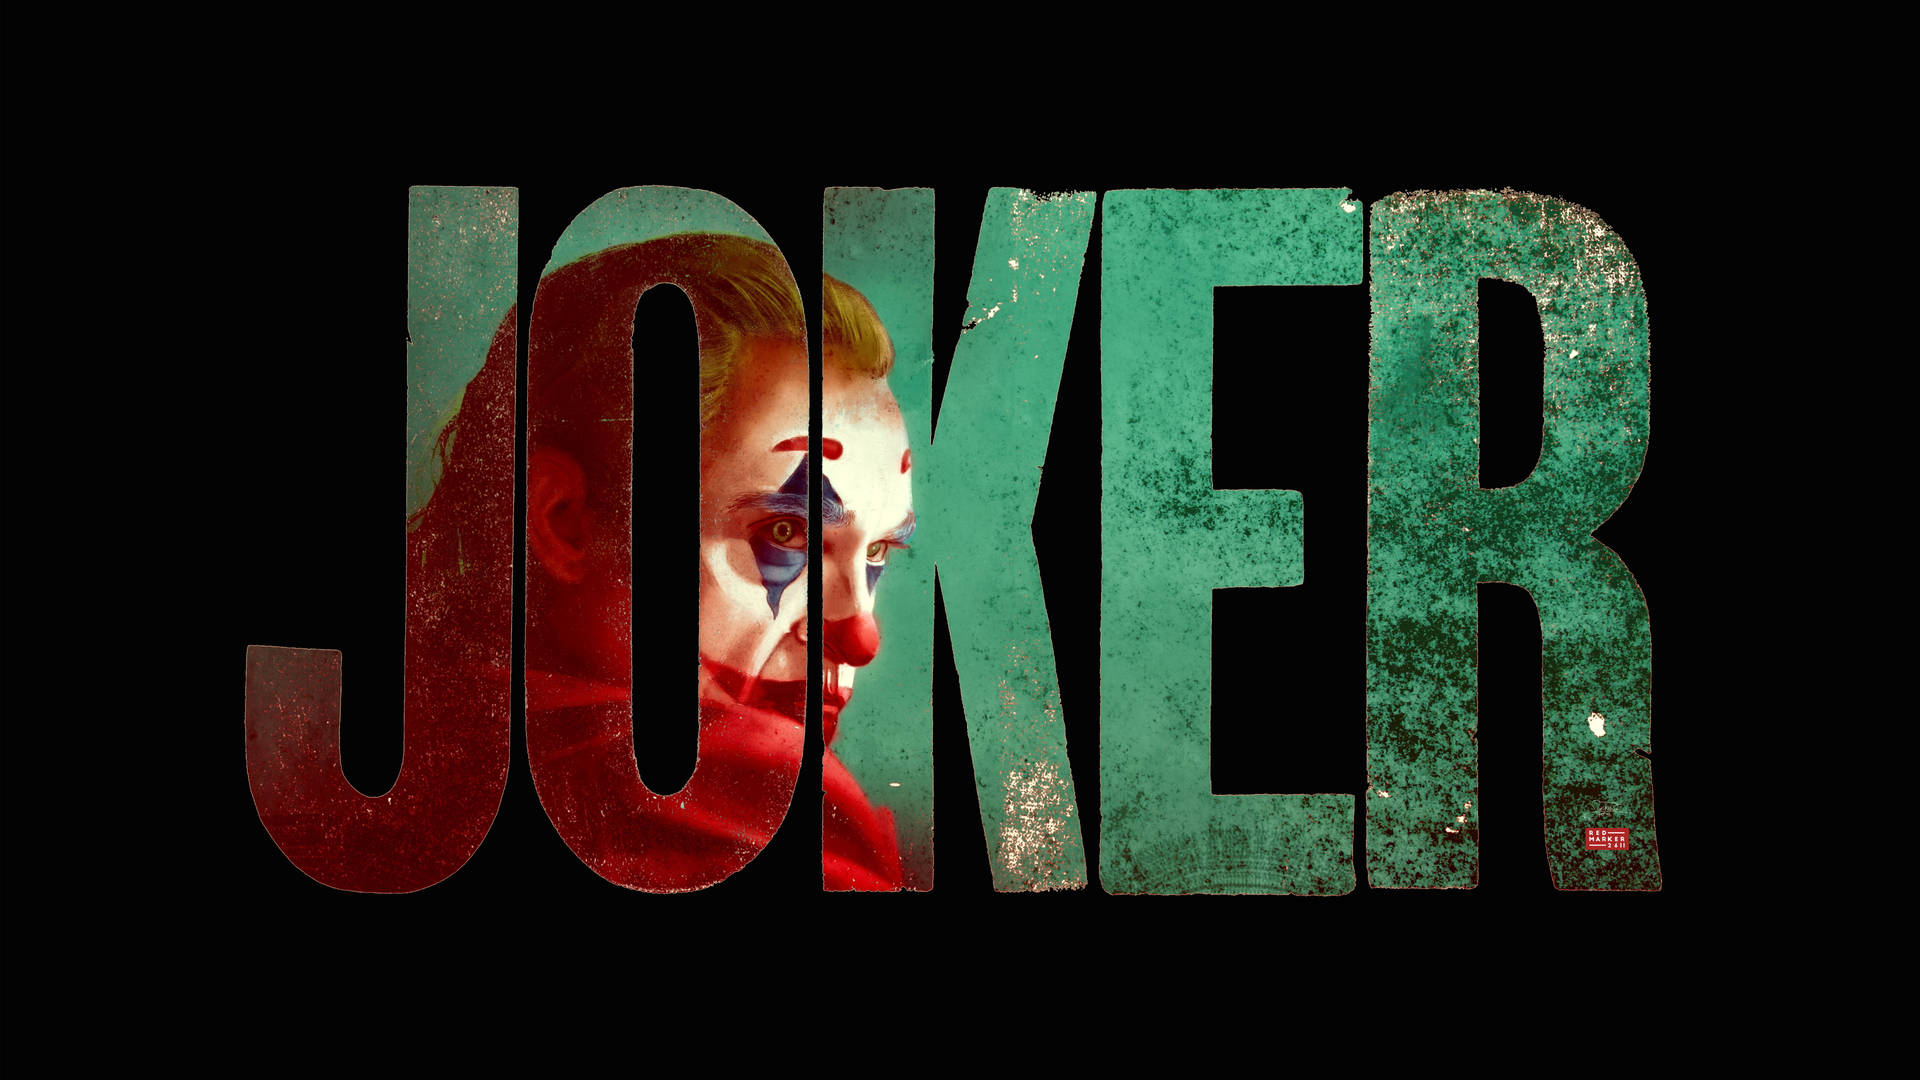 Tapet med billede af Joker 2020 tekst Wallpaper